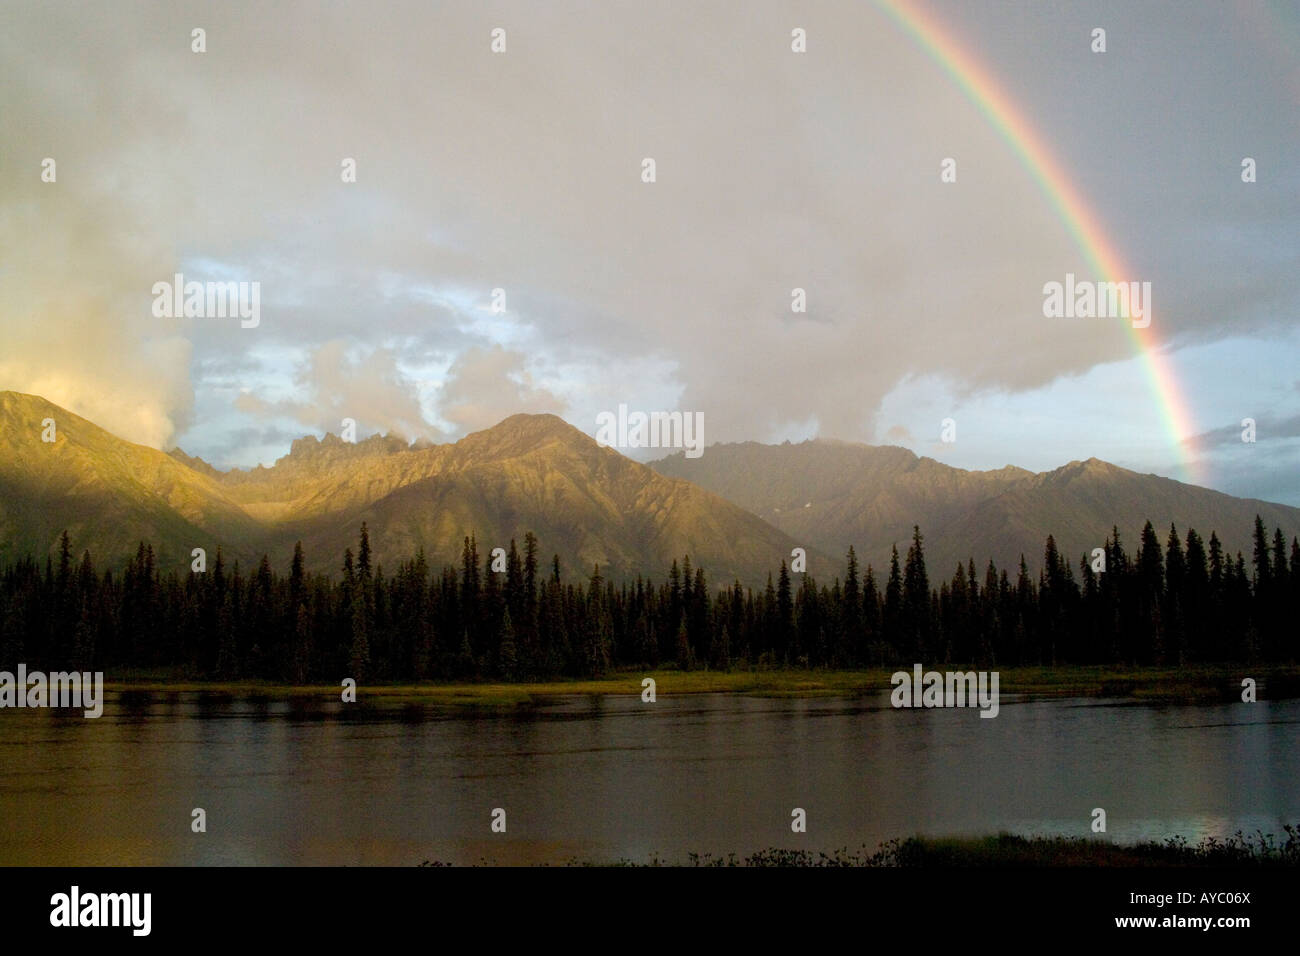 USA, Alaska. Un arc-en-ciel sur les montagnes sans nom dans la chaîne de l'Alaska. Partie de la Talkeetna Mountains, localement appelé le Craggies. Banque D'Images